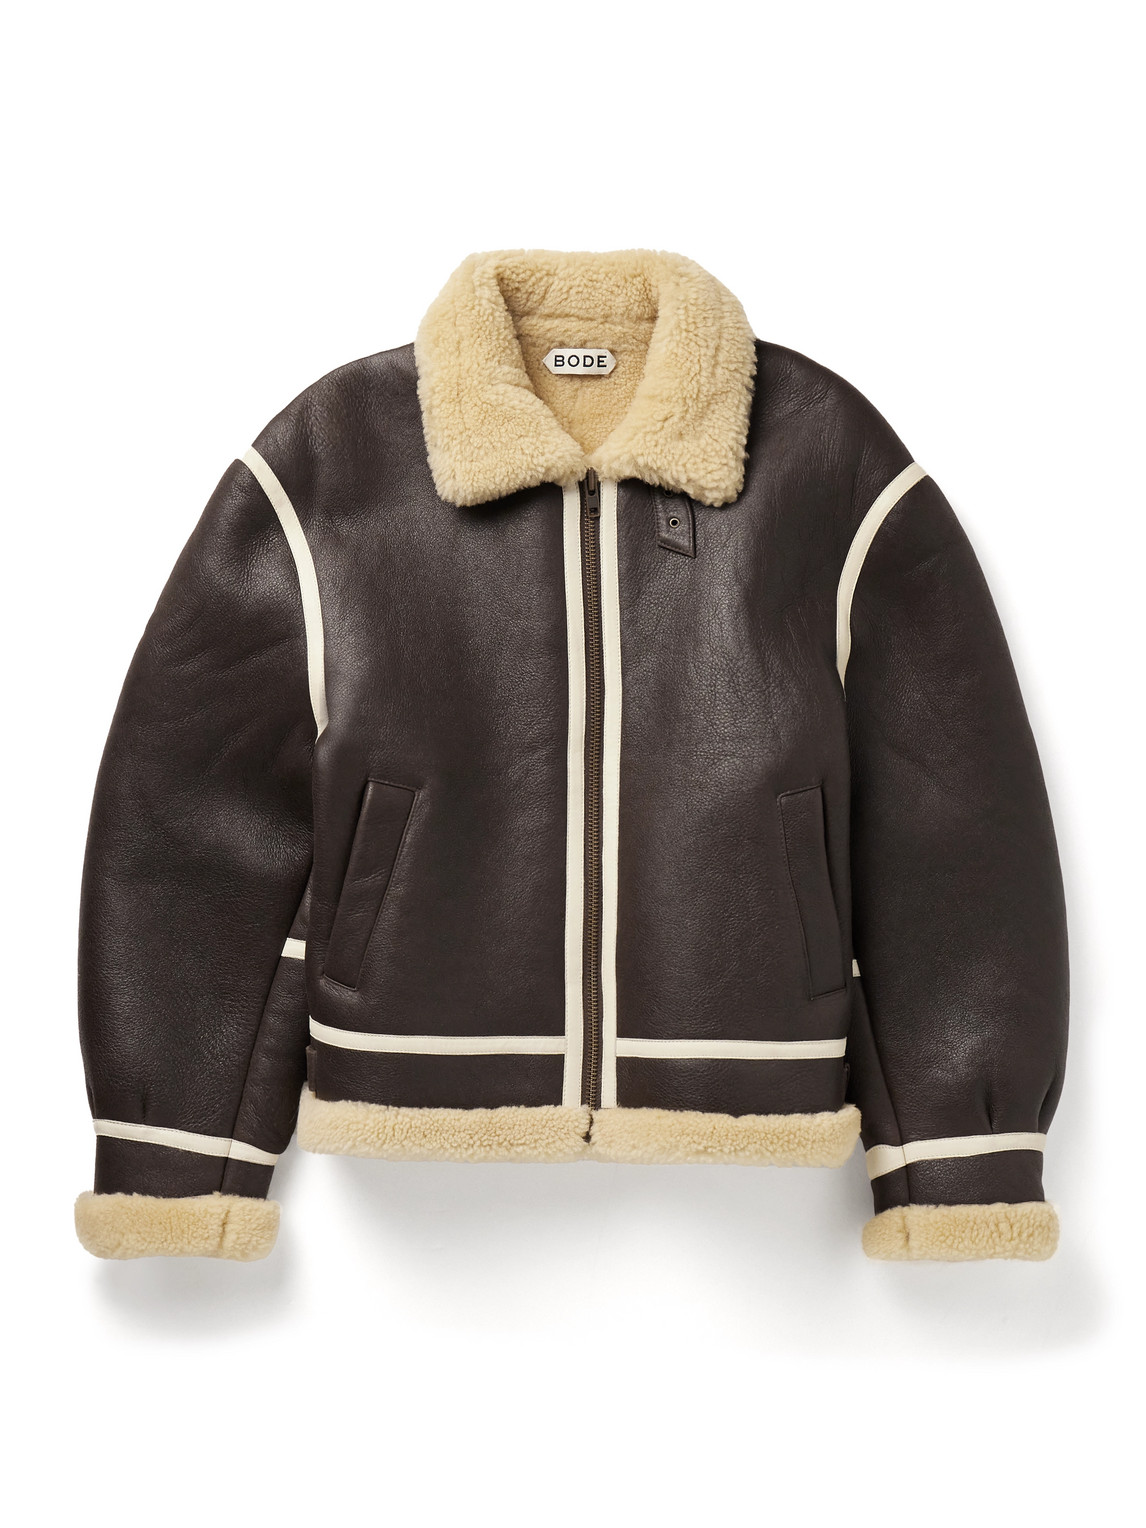 BODE - Leather-Trimmed Shearling Jacket - Men - Brown - S von BODE